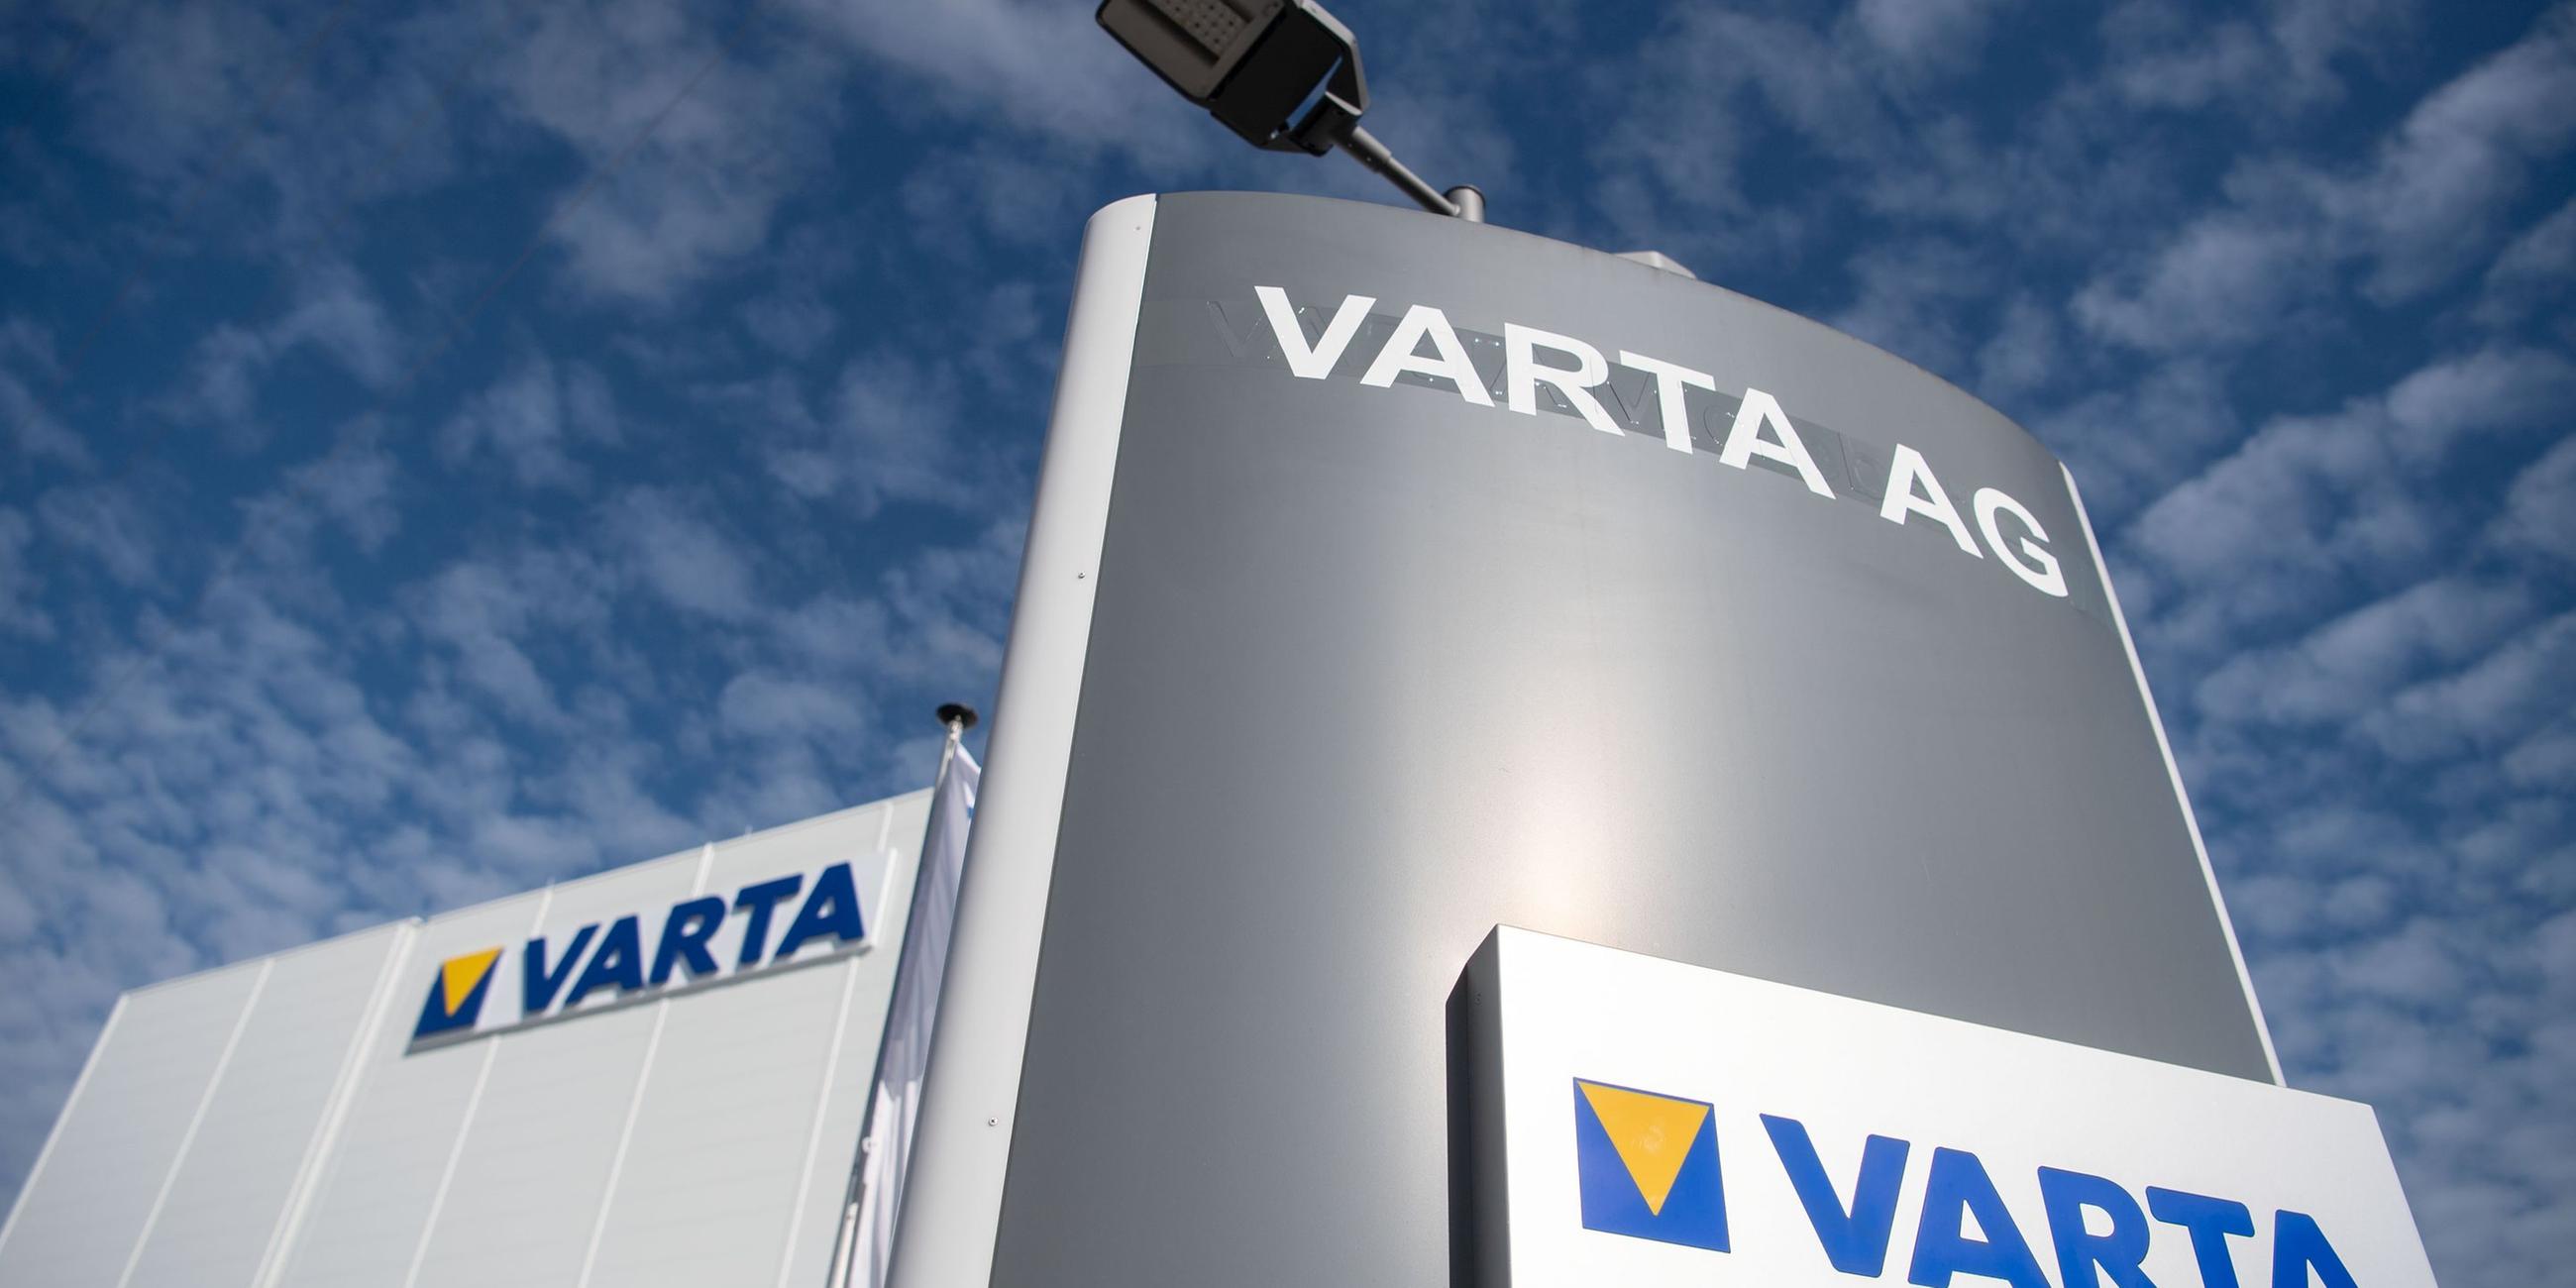 Varta AG (Archiv)